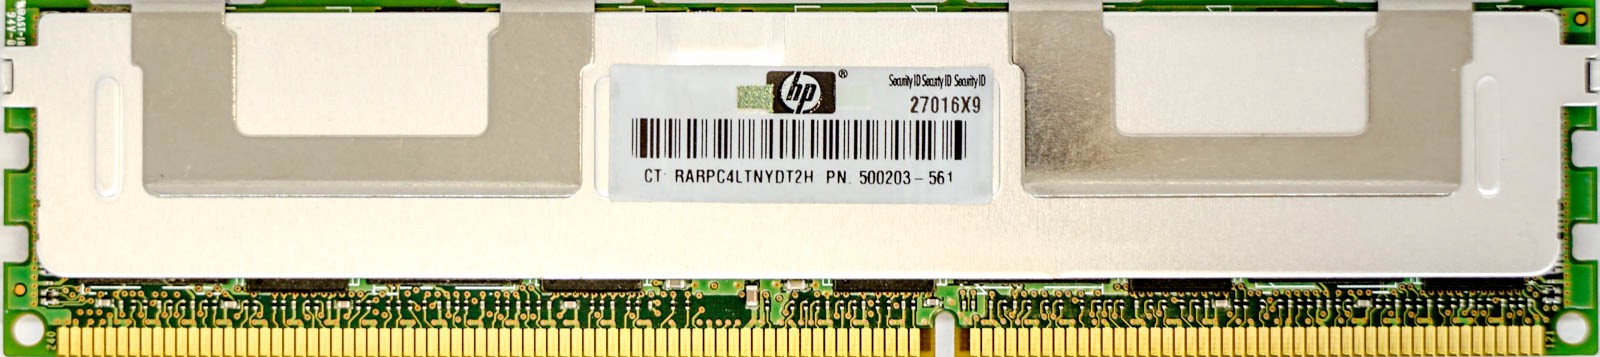 HP (500203-561) - 4GB PC3-10600R (DDR3-1333Mhz, 2RX4)